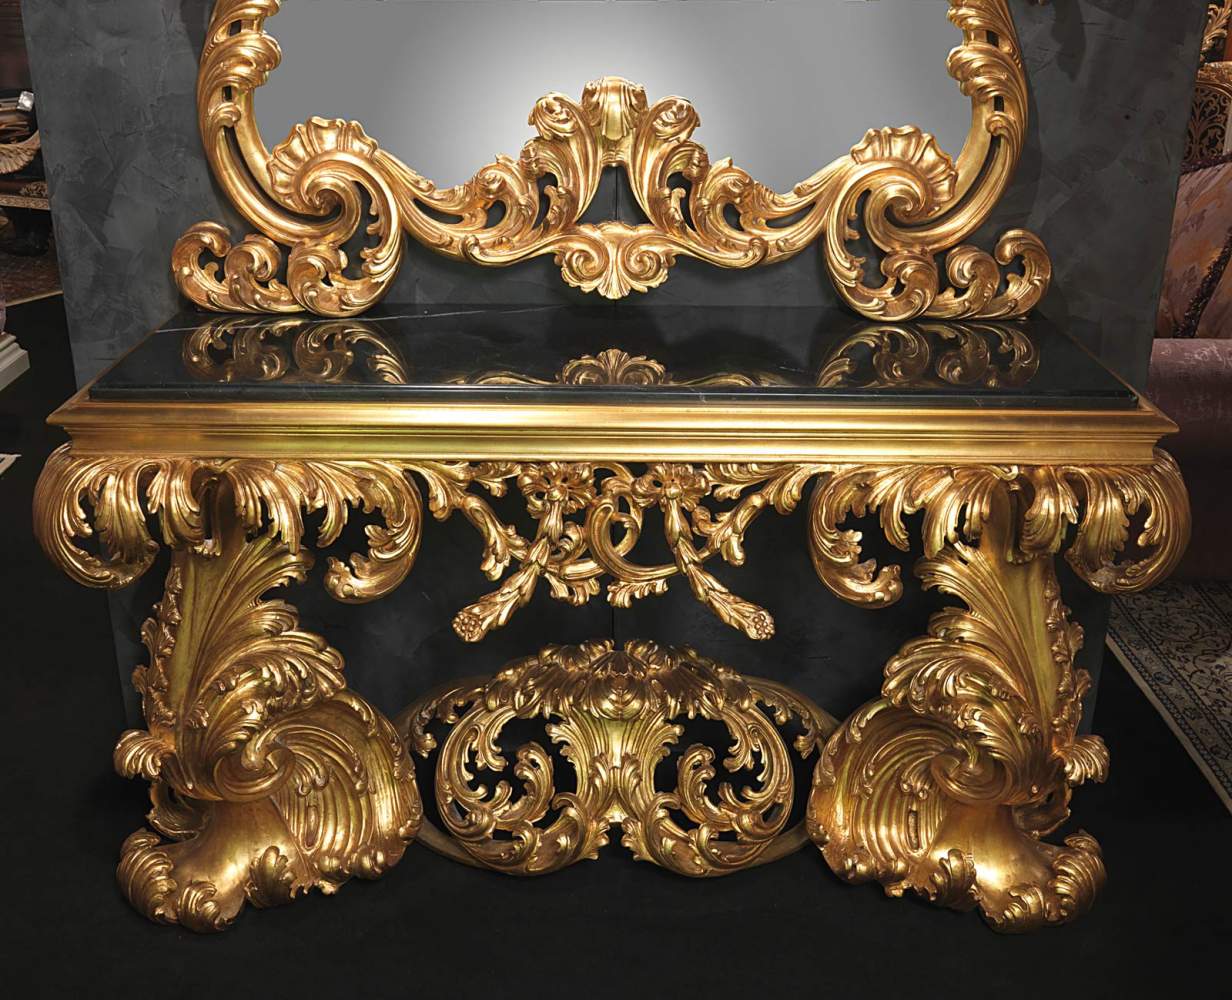 Consolle barocca 600 italiano con marmo nero